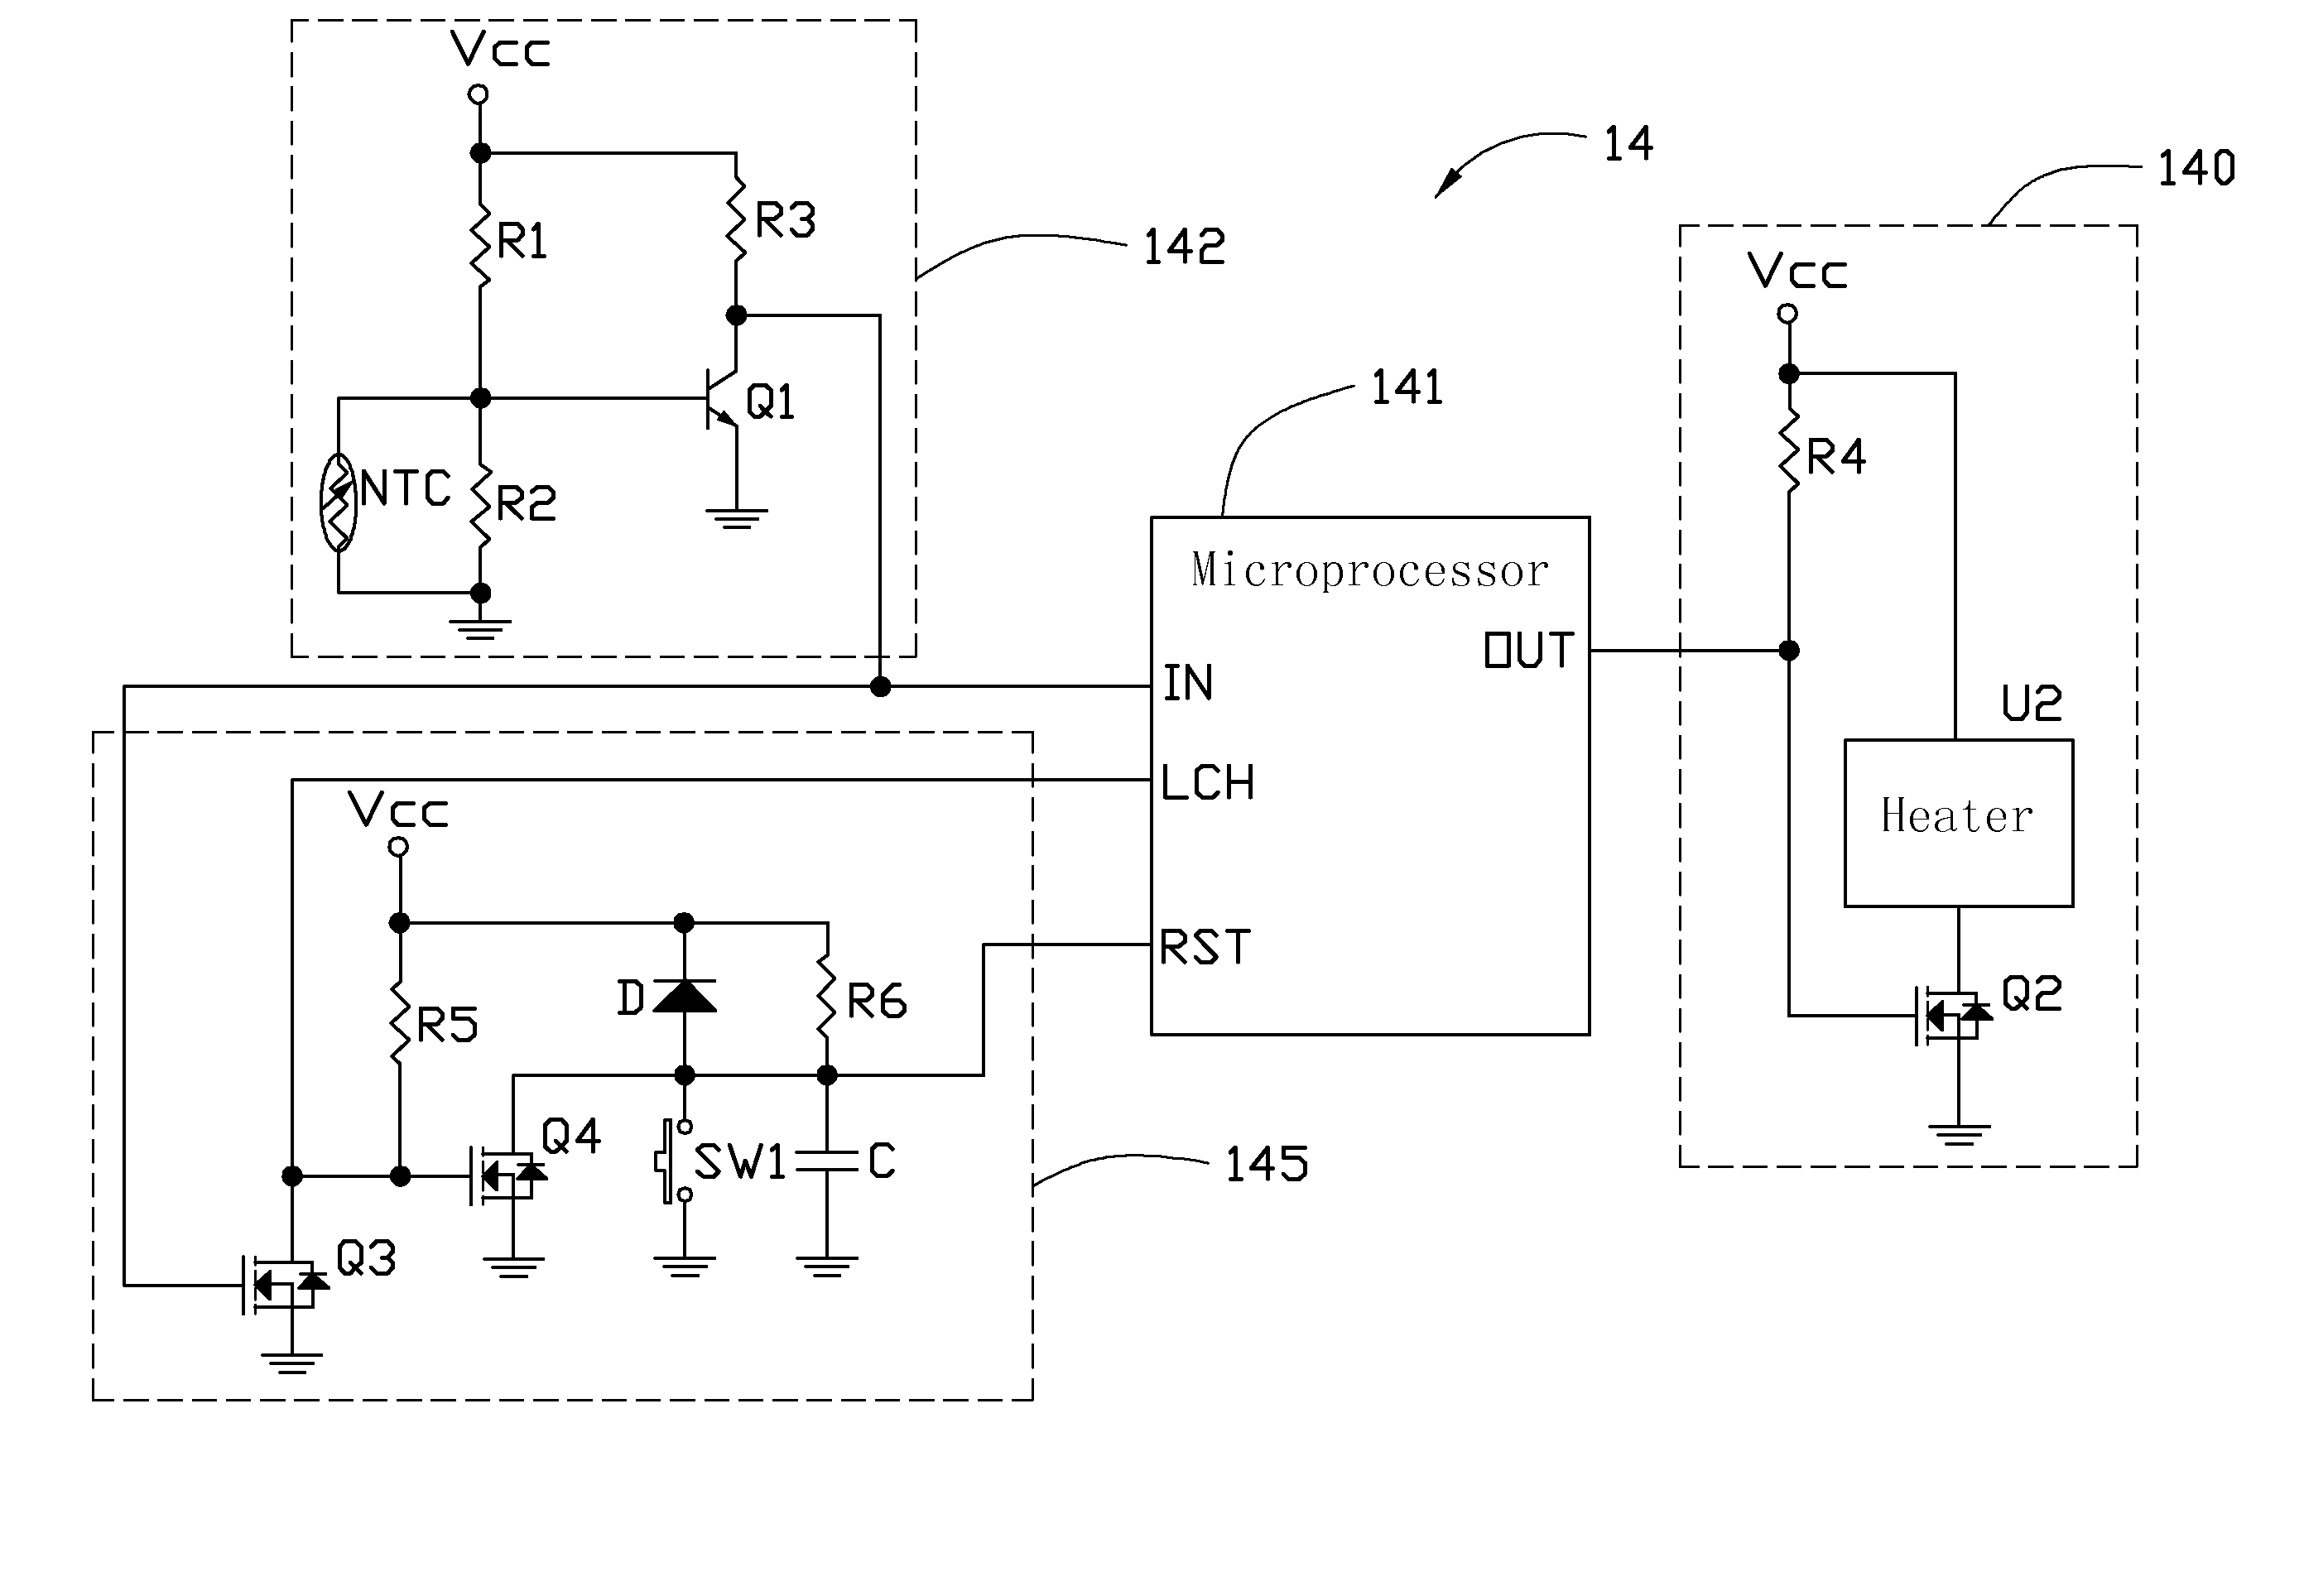 Temperature control circuit